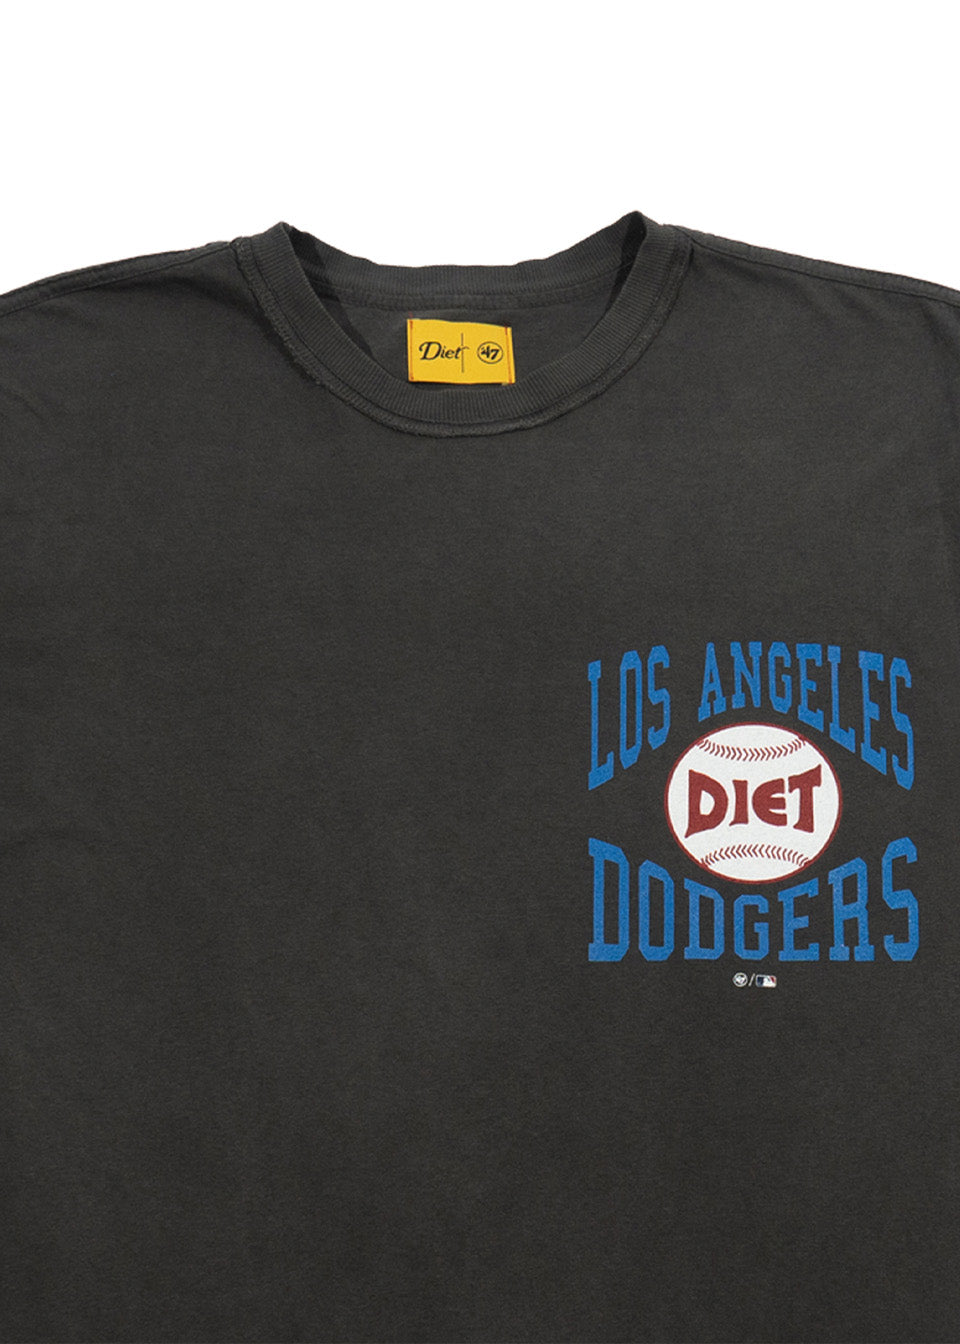 Dodger Diner T-Shirt L